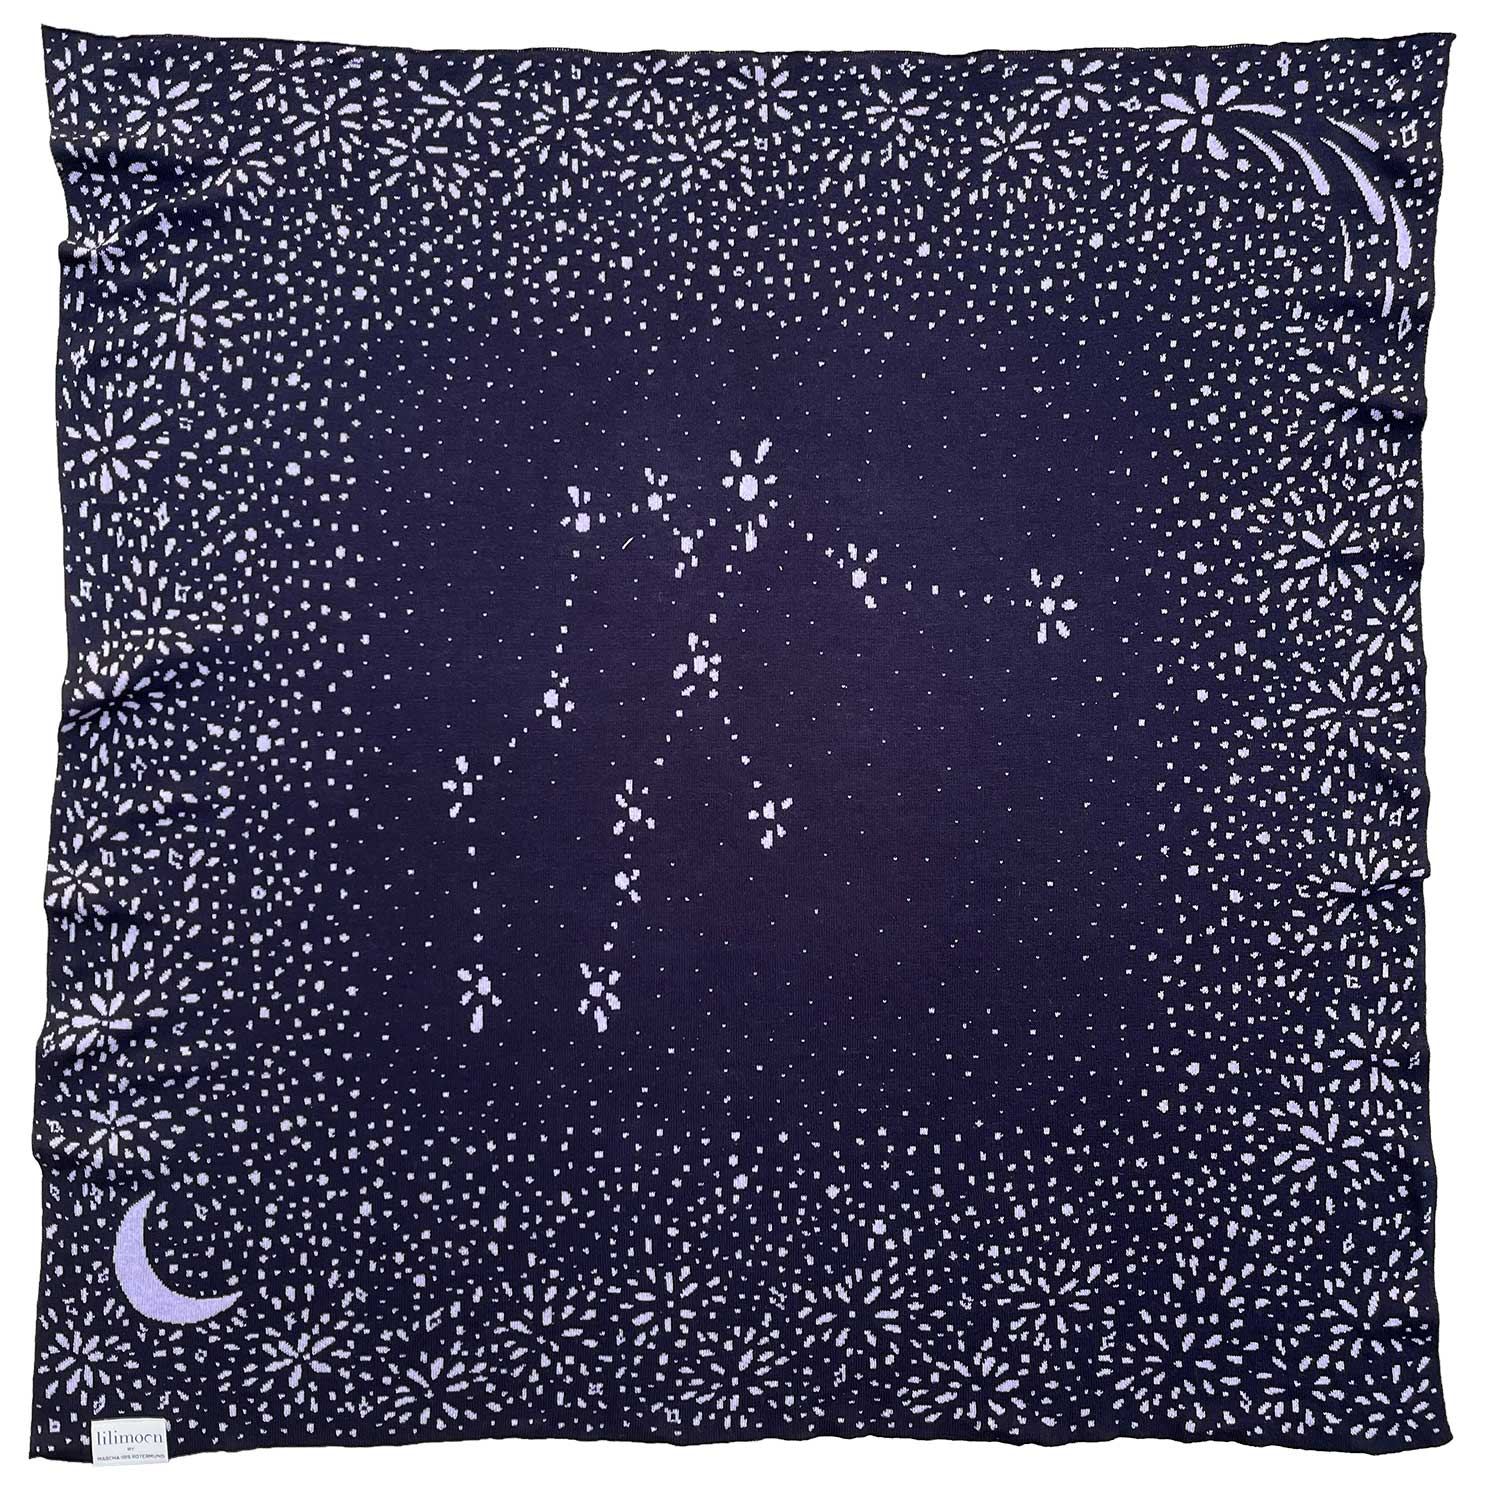 Personalisierte Babydecke Cosmos aus Baumwolle mit Kaschmir in Dunkelblau und Flieder gestrickt mit Sternzeichen von LILIMOON